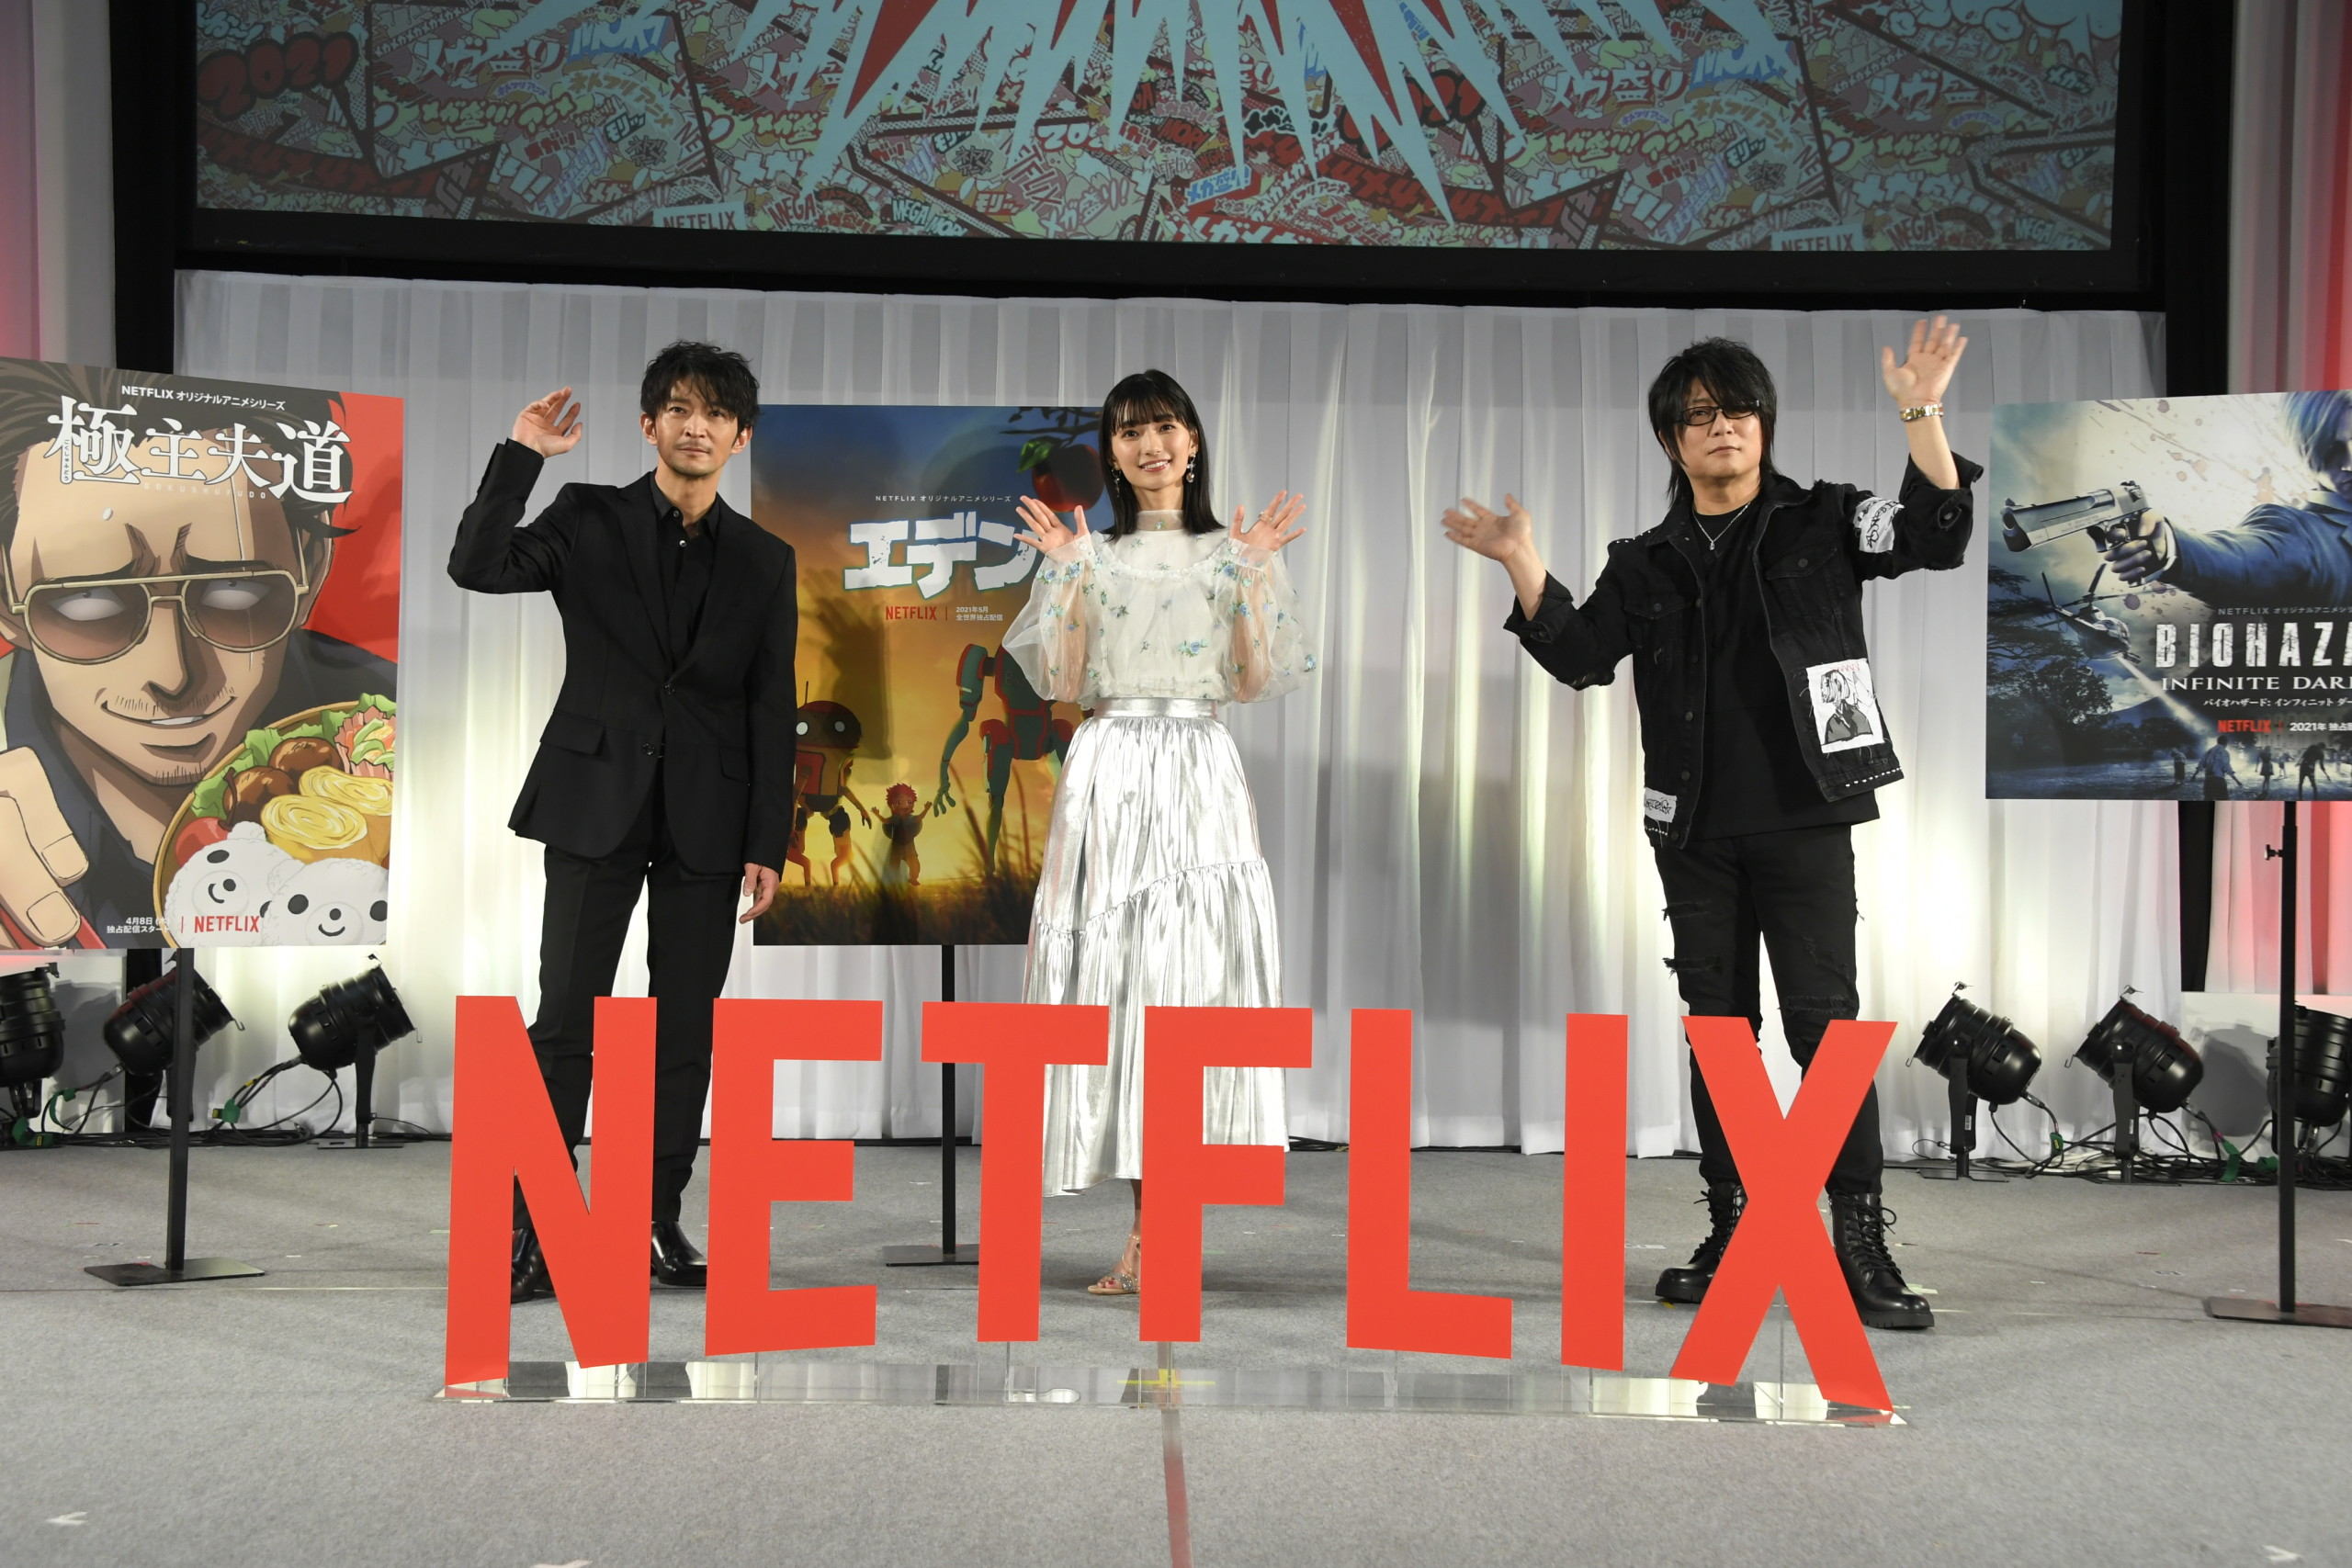 21年 ネトフリアニメは約40本 ネトフリアニメ Animejapan 21 メガ盛りステージ 開催 About Netflix